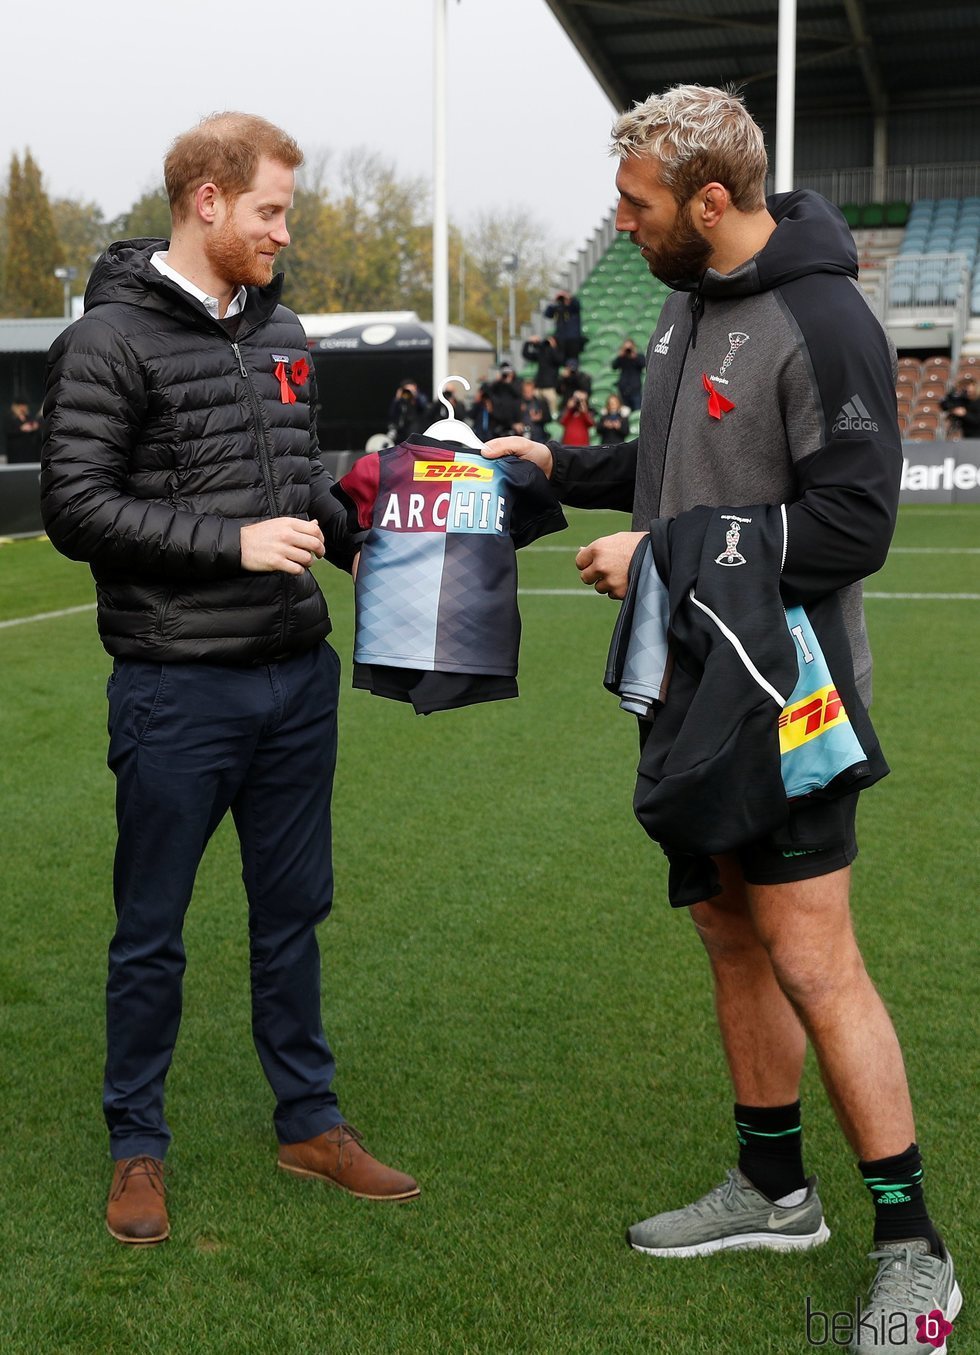 El Príncipe Harry recibe una camiseta con el nombre de su hijo Archie